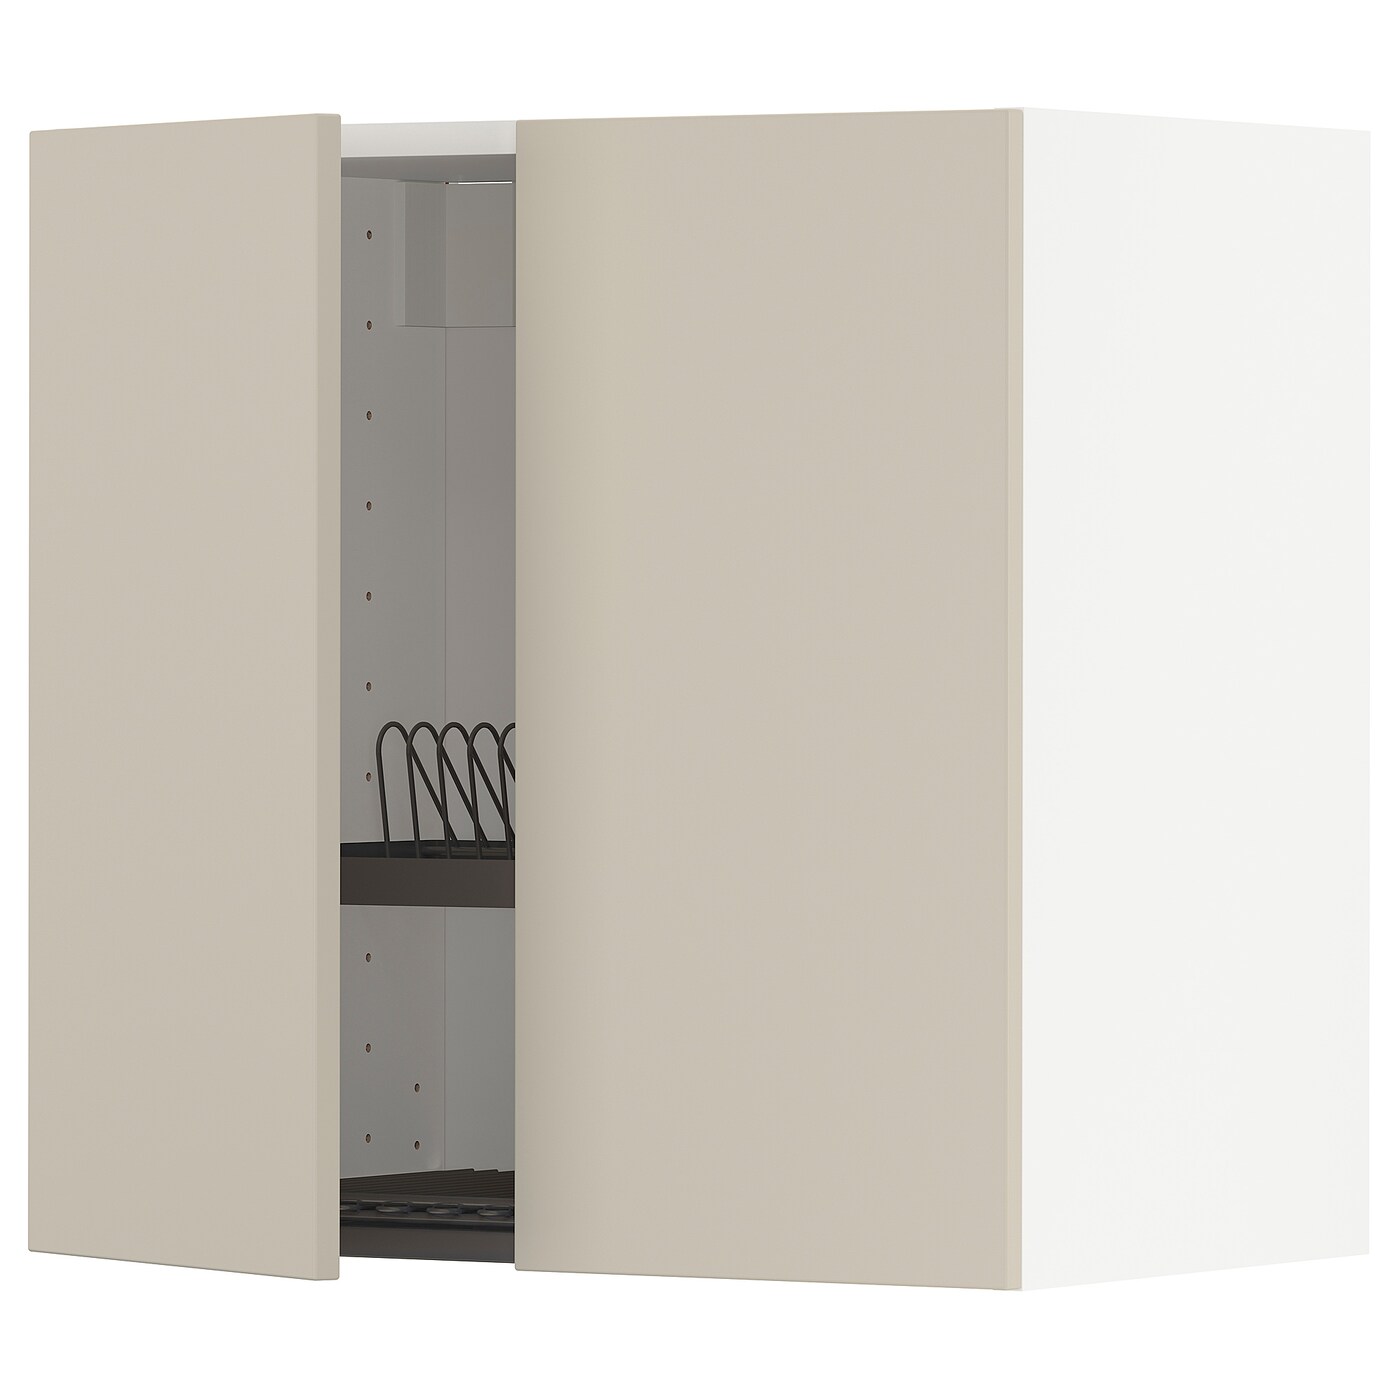 Навесной шкаф с сушилкой - METOD IKEA/ МЕТОД ИКЕА, 60х60 см, светло-коричневый/белый